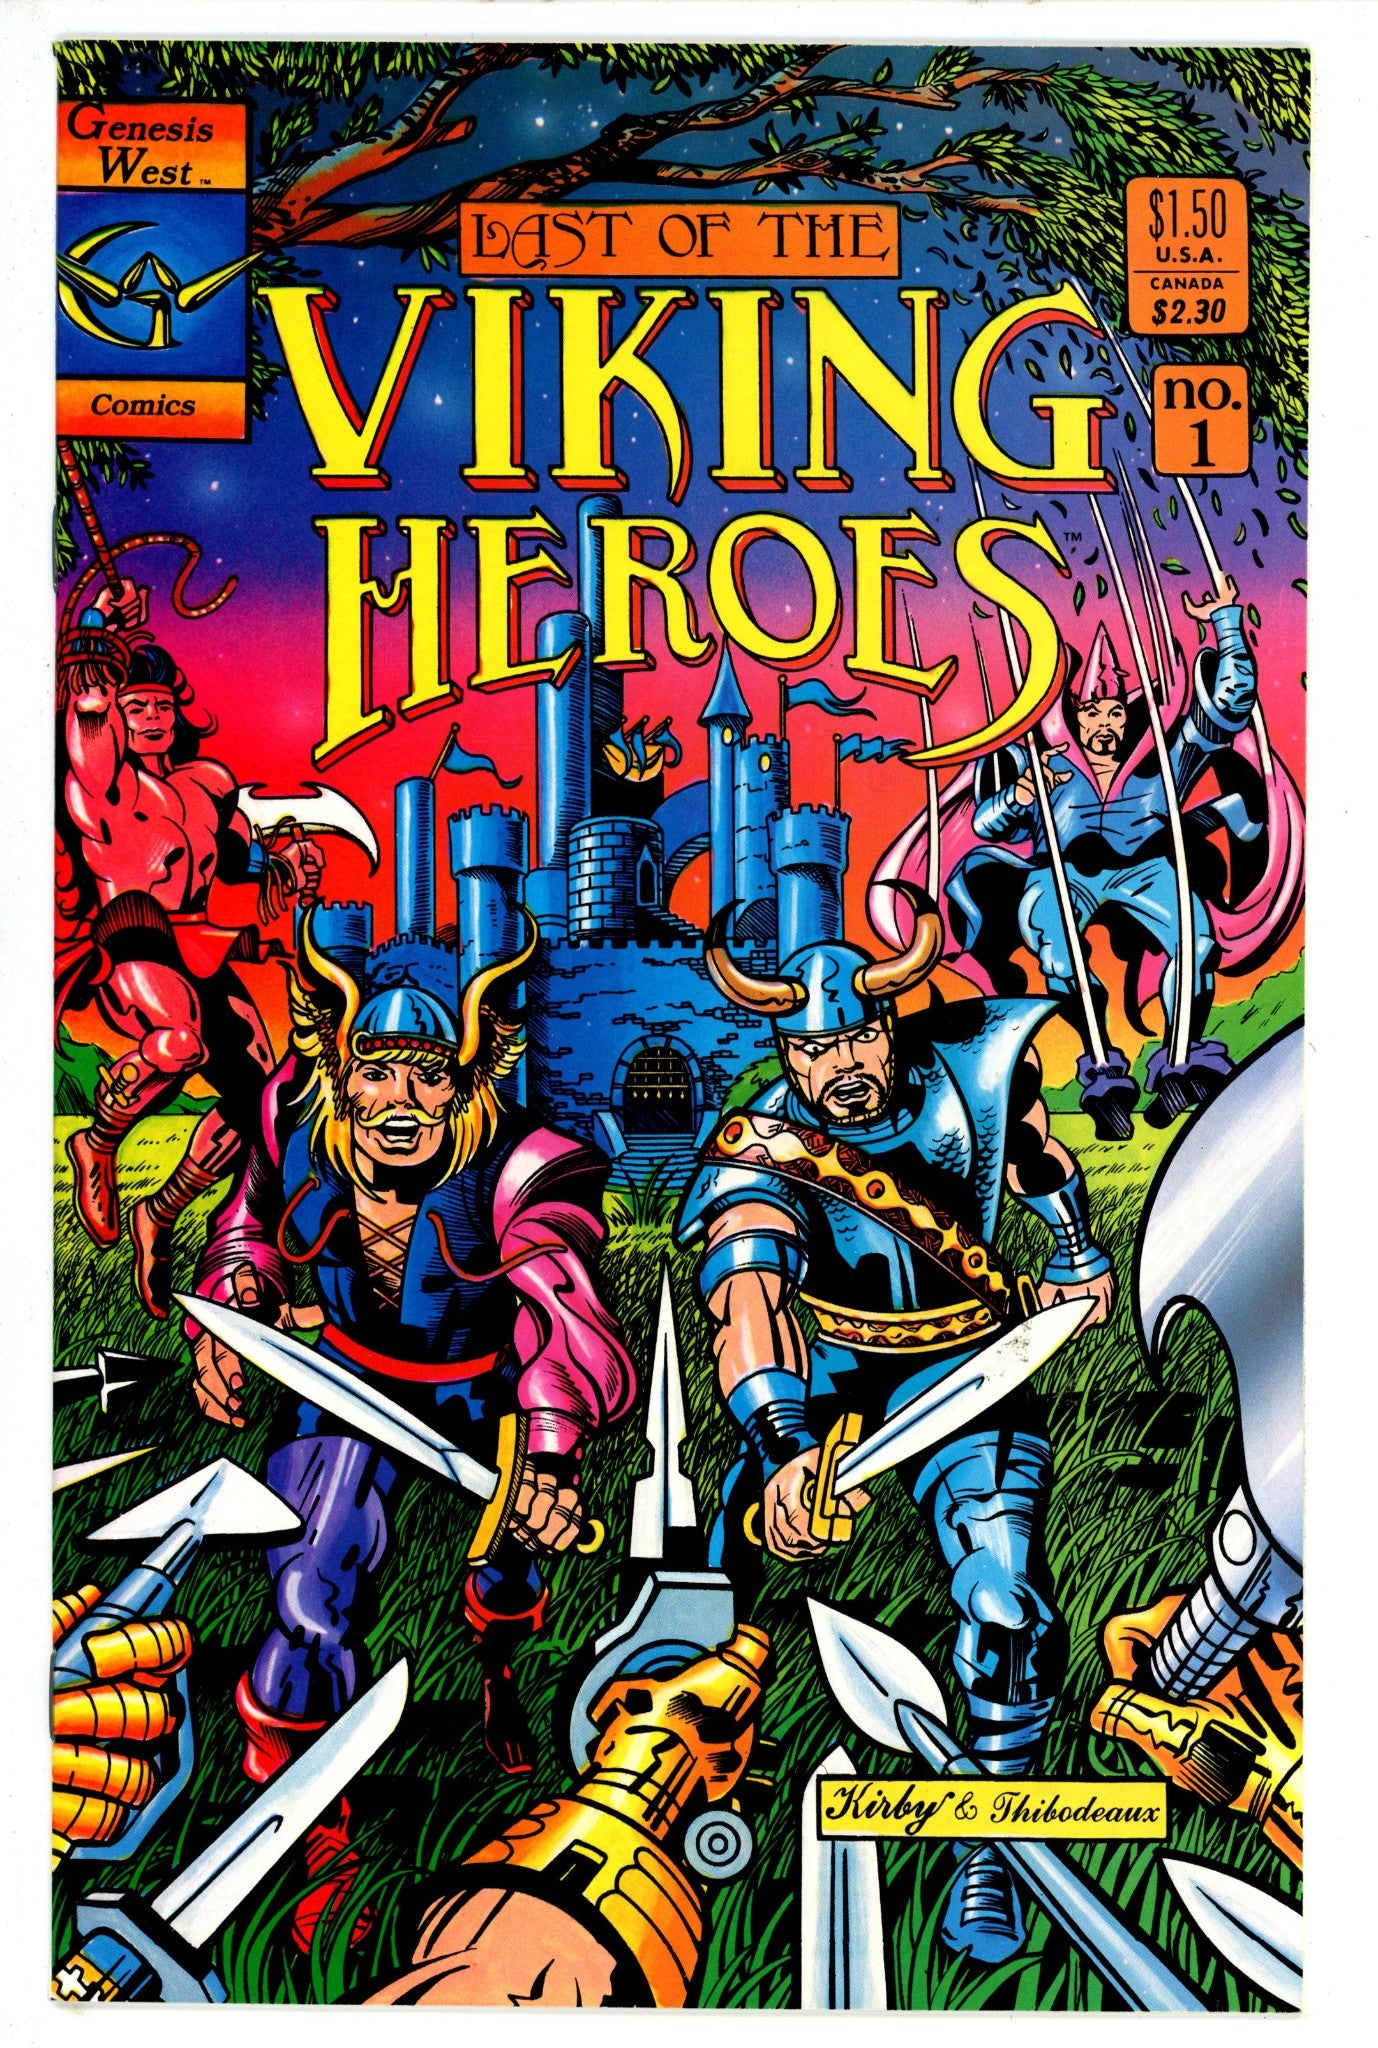 Last of the Viking Heroes 1 (1987)